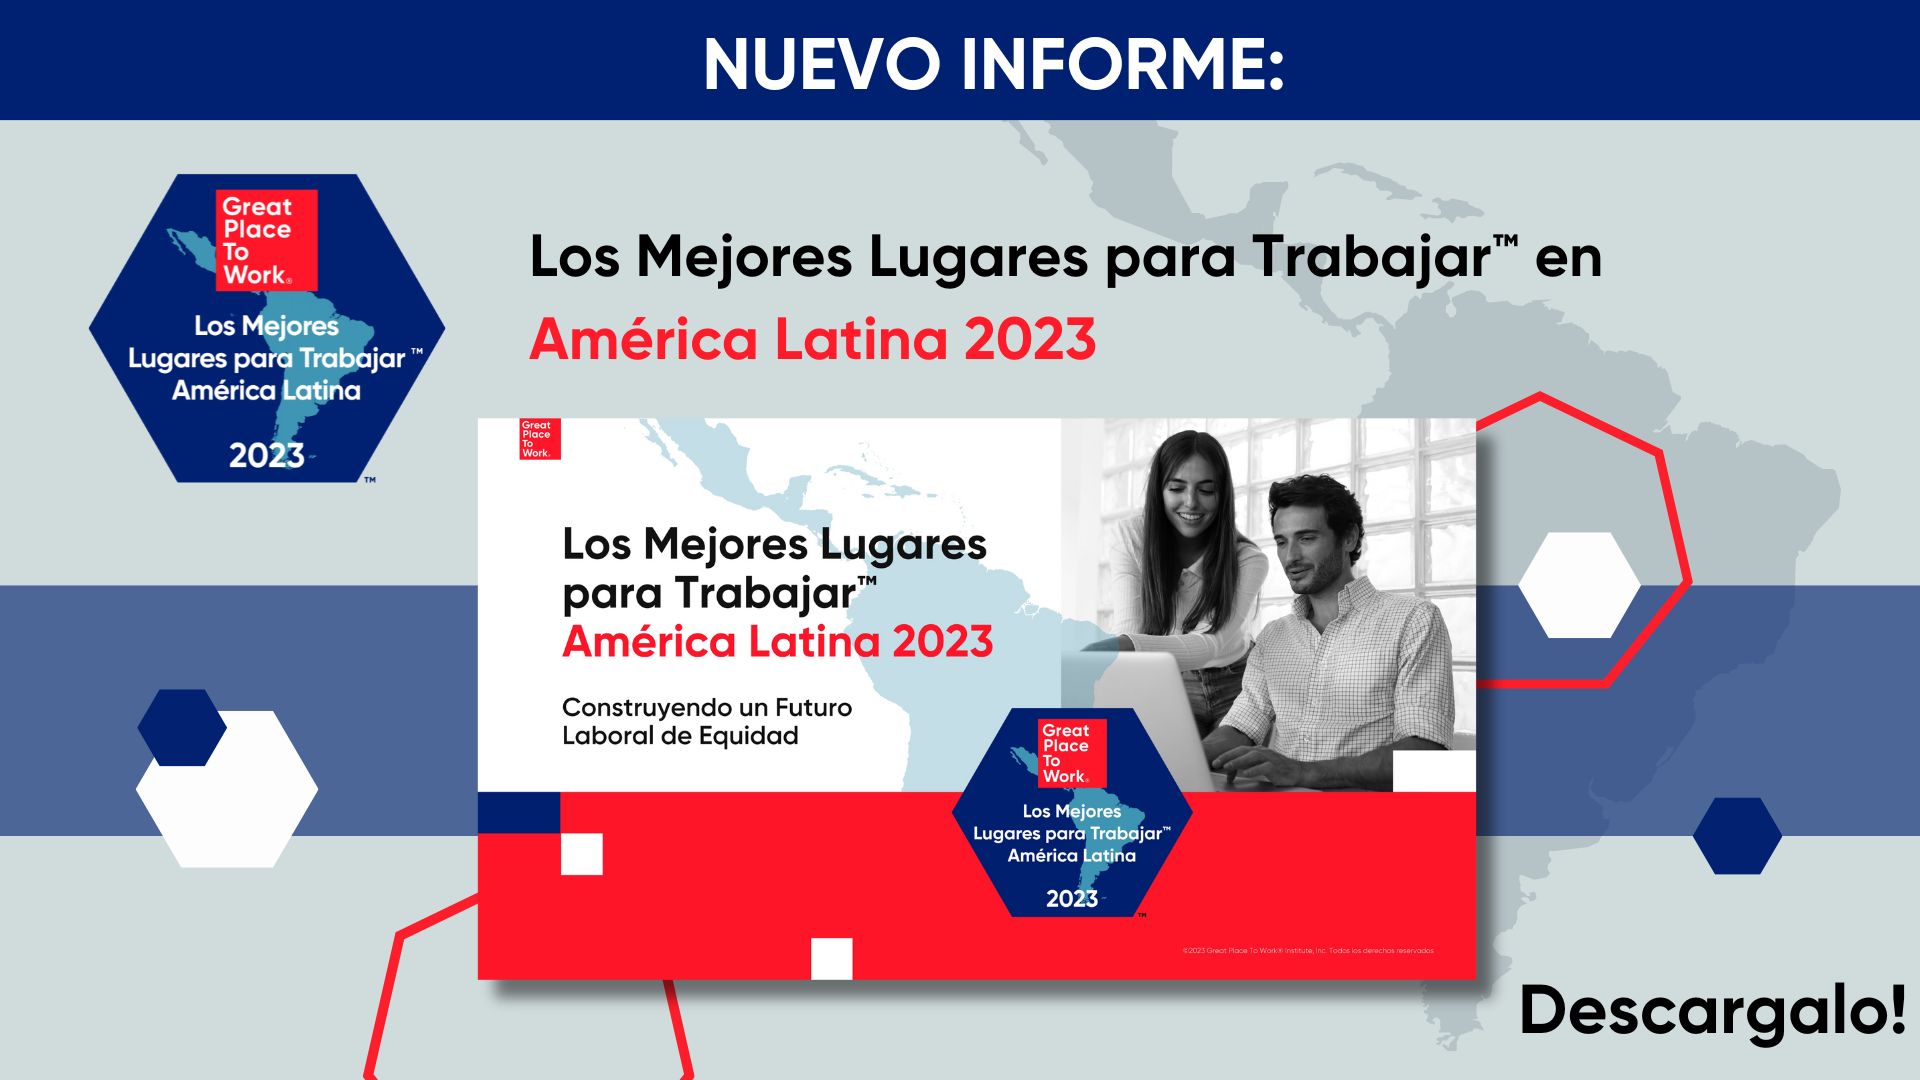 Los Mejores Lugares para Trabajar™ América Latina 2023